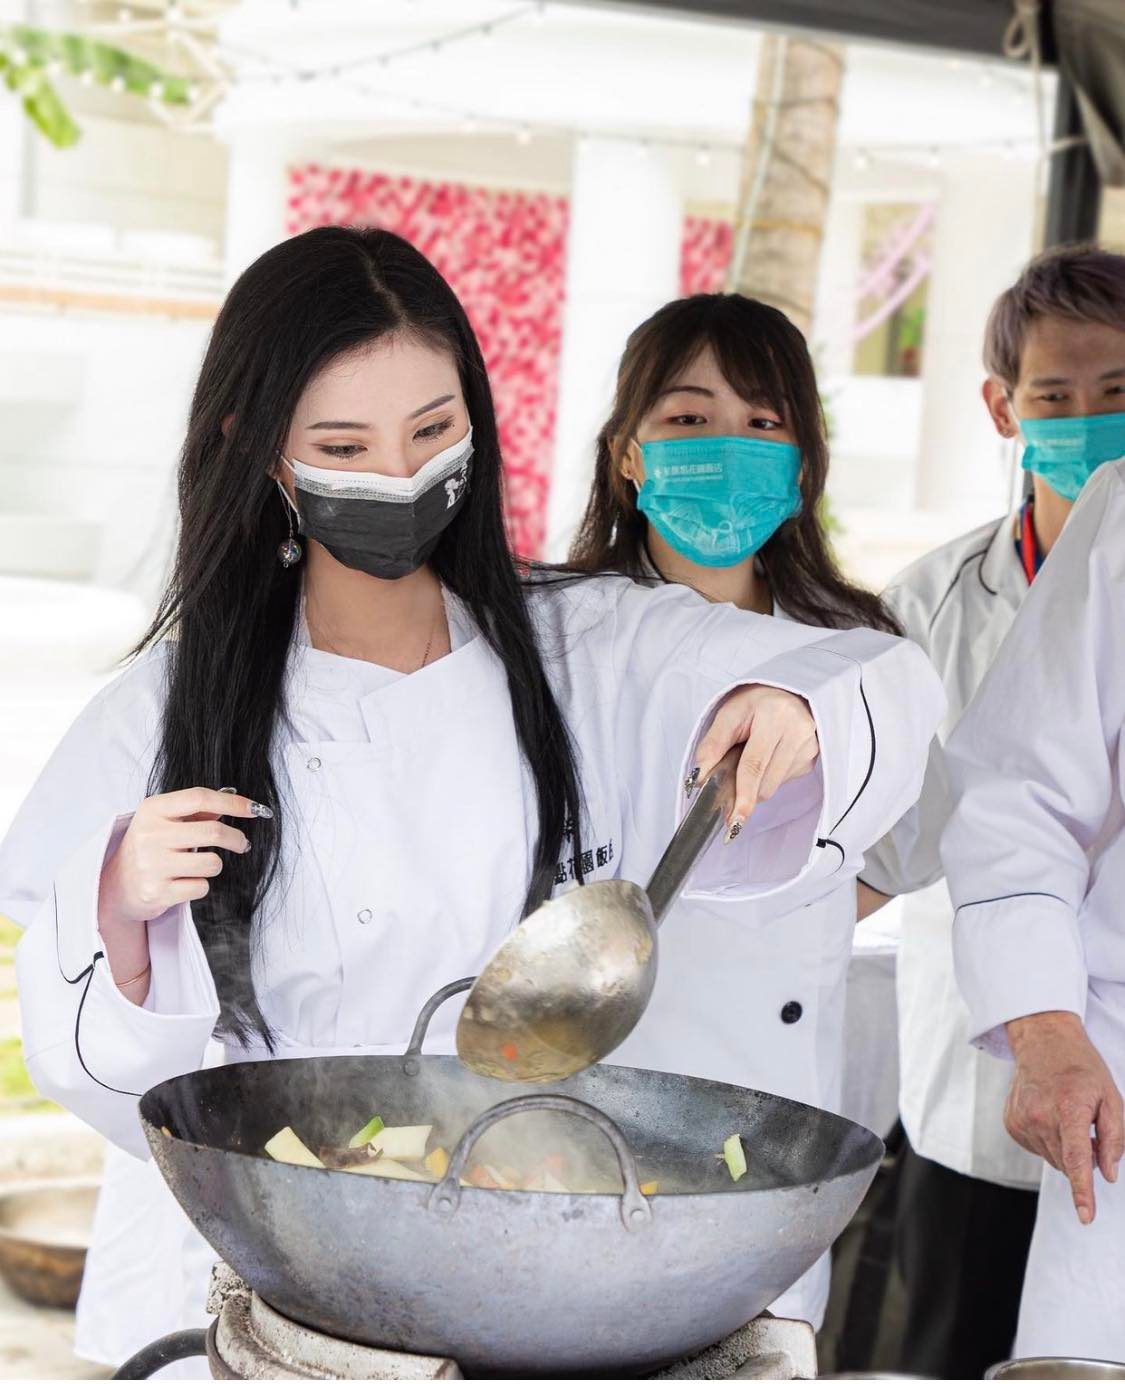 Một người đẹp nổi tiếng trên MXH Trung Quốc tham gia chương trình nấu ăn từ thiện nhưng gây tranh cãi vì gu mặc.